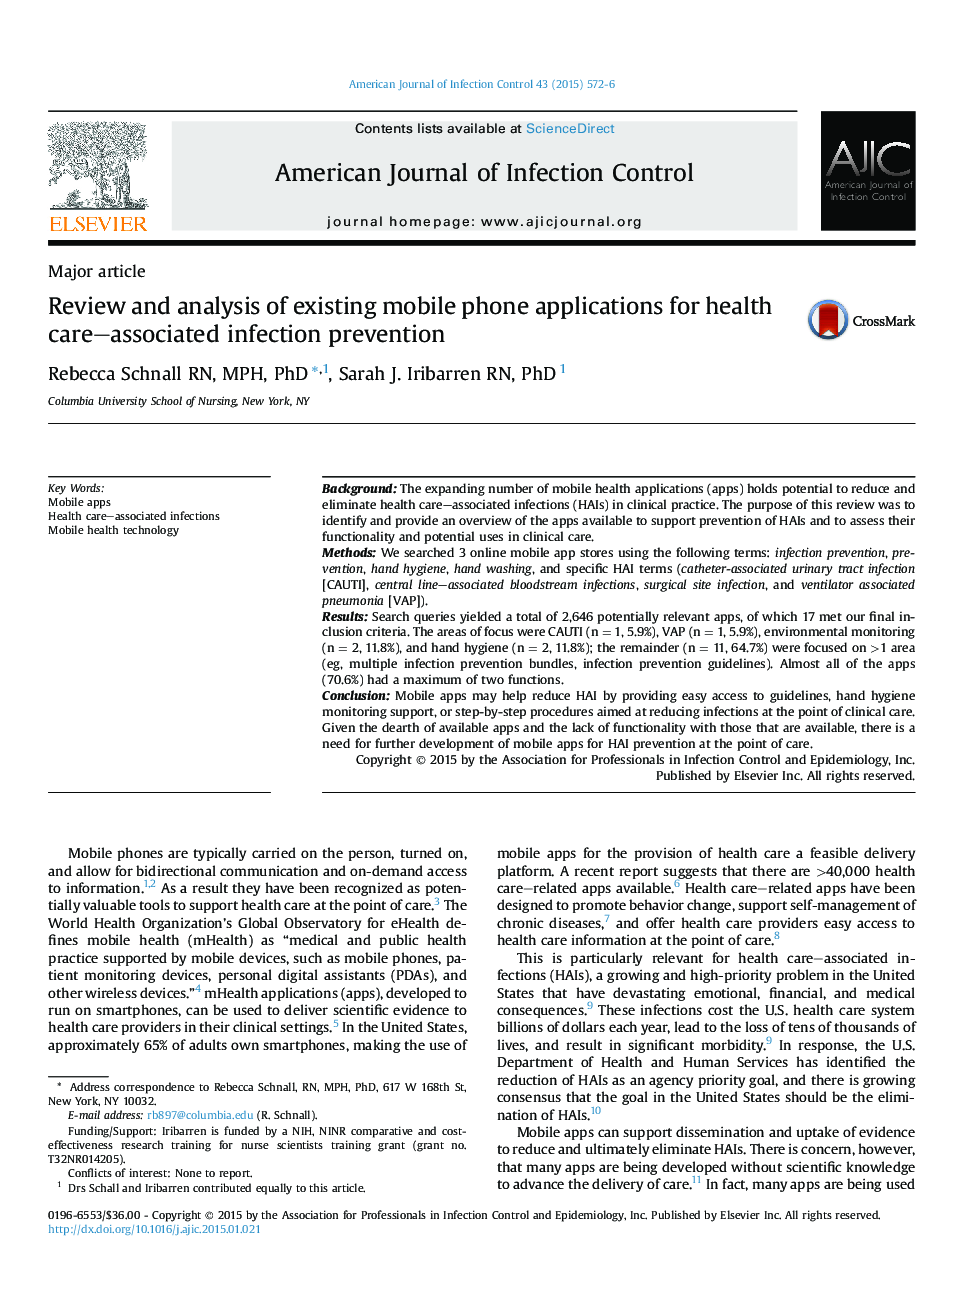 مقالات مهم بررسی و تجزیه و تحلیل برنامه های تلفن همراه موجود برای پیشگیری از عفونت های مرتبط با مراقبت های بهداشتی 